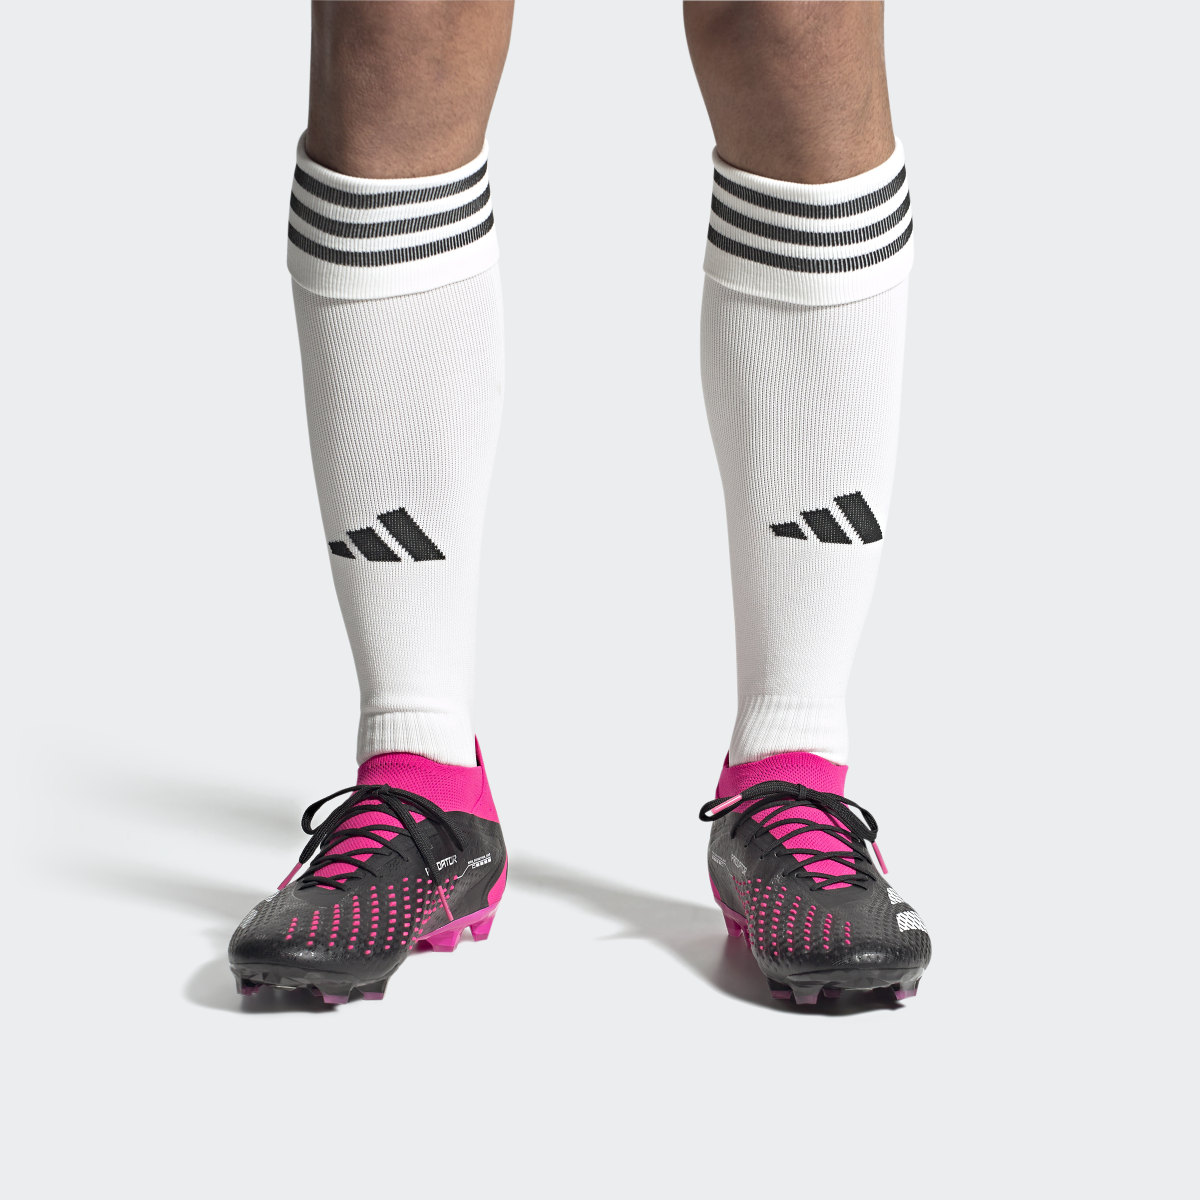 Adidas Predator Accuracy.1 Artificial Grass Boots. 5